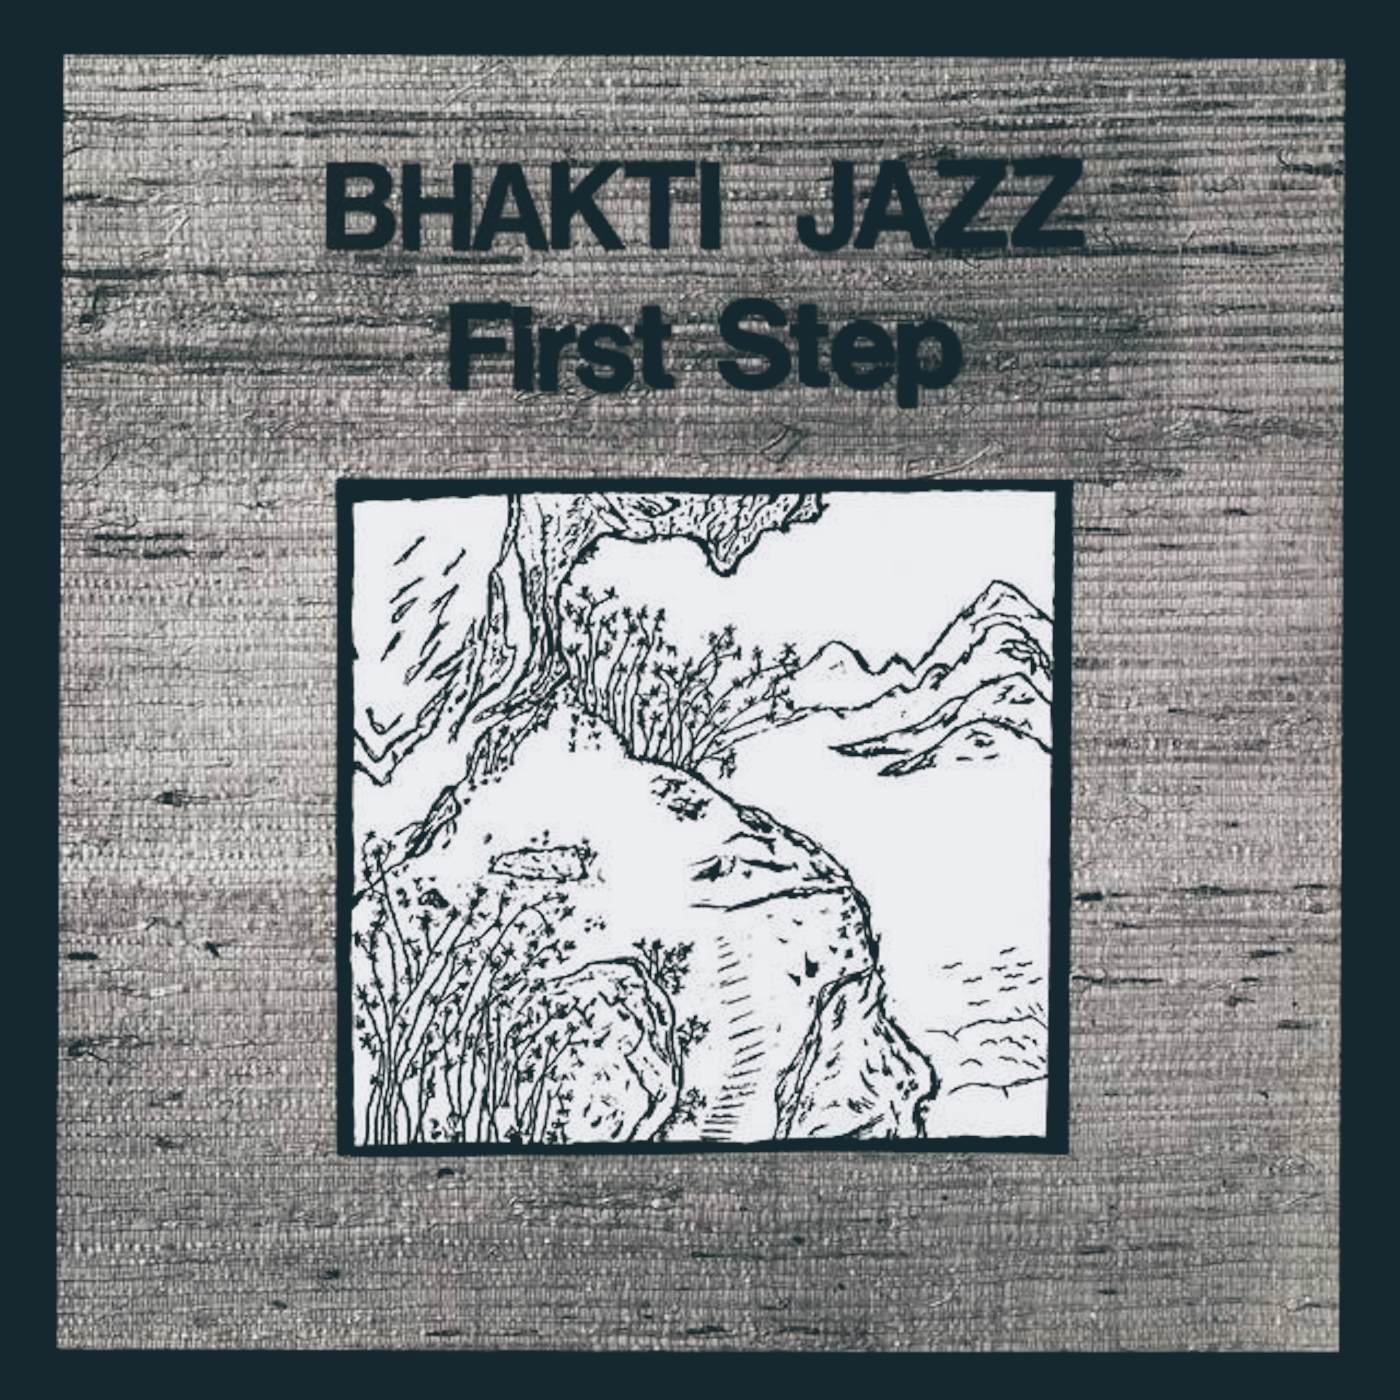 Bhakti Jazz